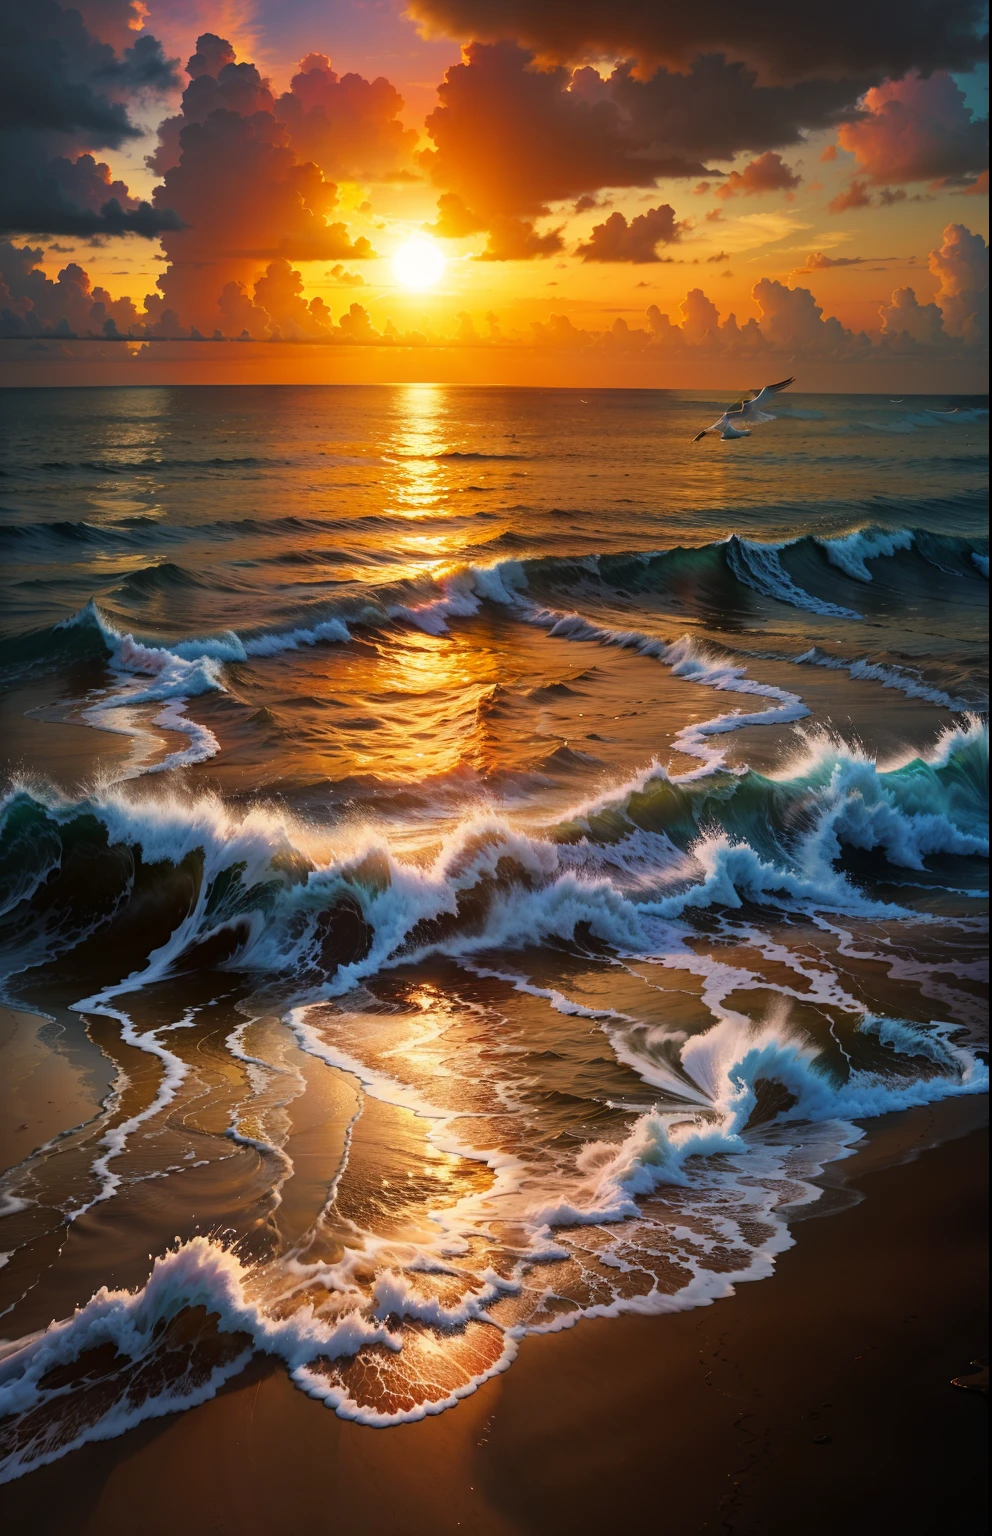 Una puesta de sol absolutamente fascinante sobre la playa., con una mezcla de naranjas, rosas, y amarillos llenando el cielo. Las aguas cristalinas del mar besan suavemente la orilla, con una playa de arena blanca que se extiende a lo largo y ancho. La escena es dinámica e impresionante., con gaviotas volando alto en el cielo y palmeras que se balancean suavemente. Disfrute de la atmósfera relajante y deje que la paz lo invada.